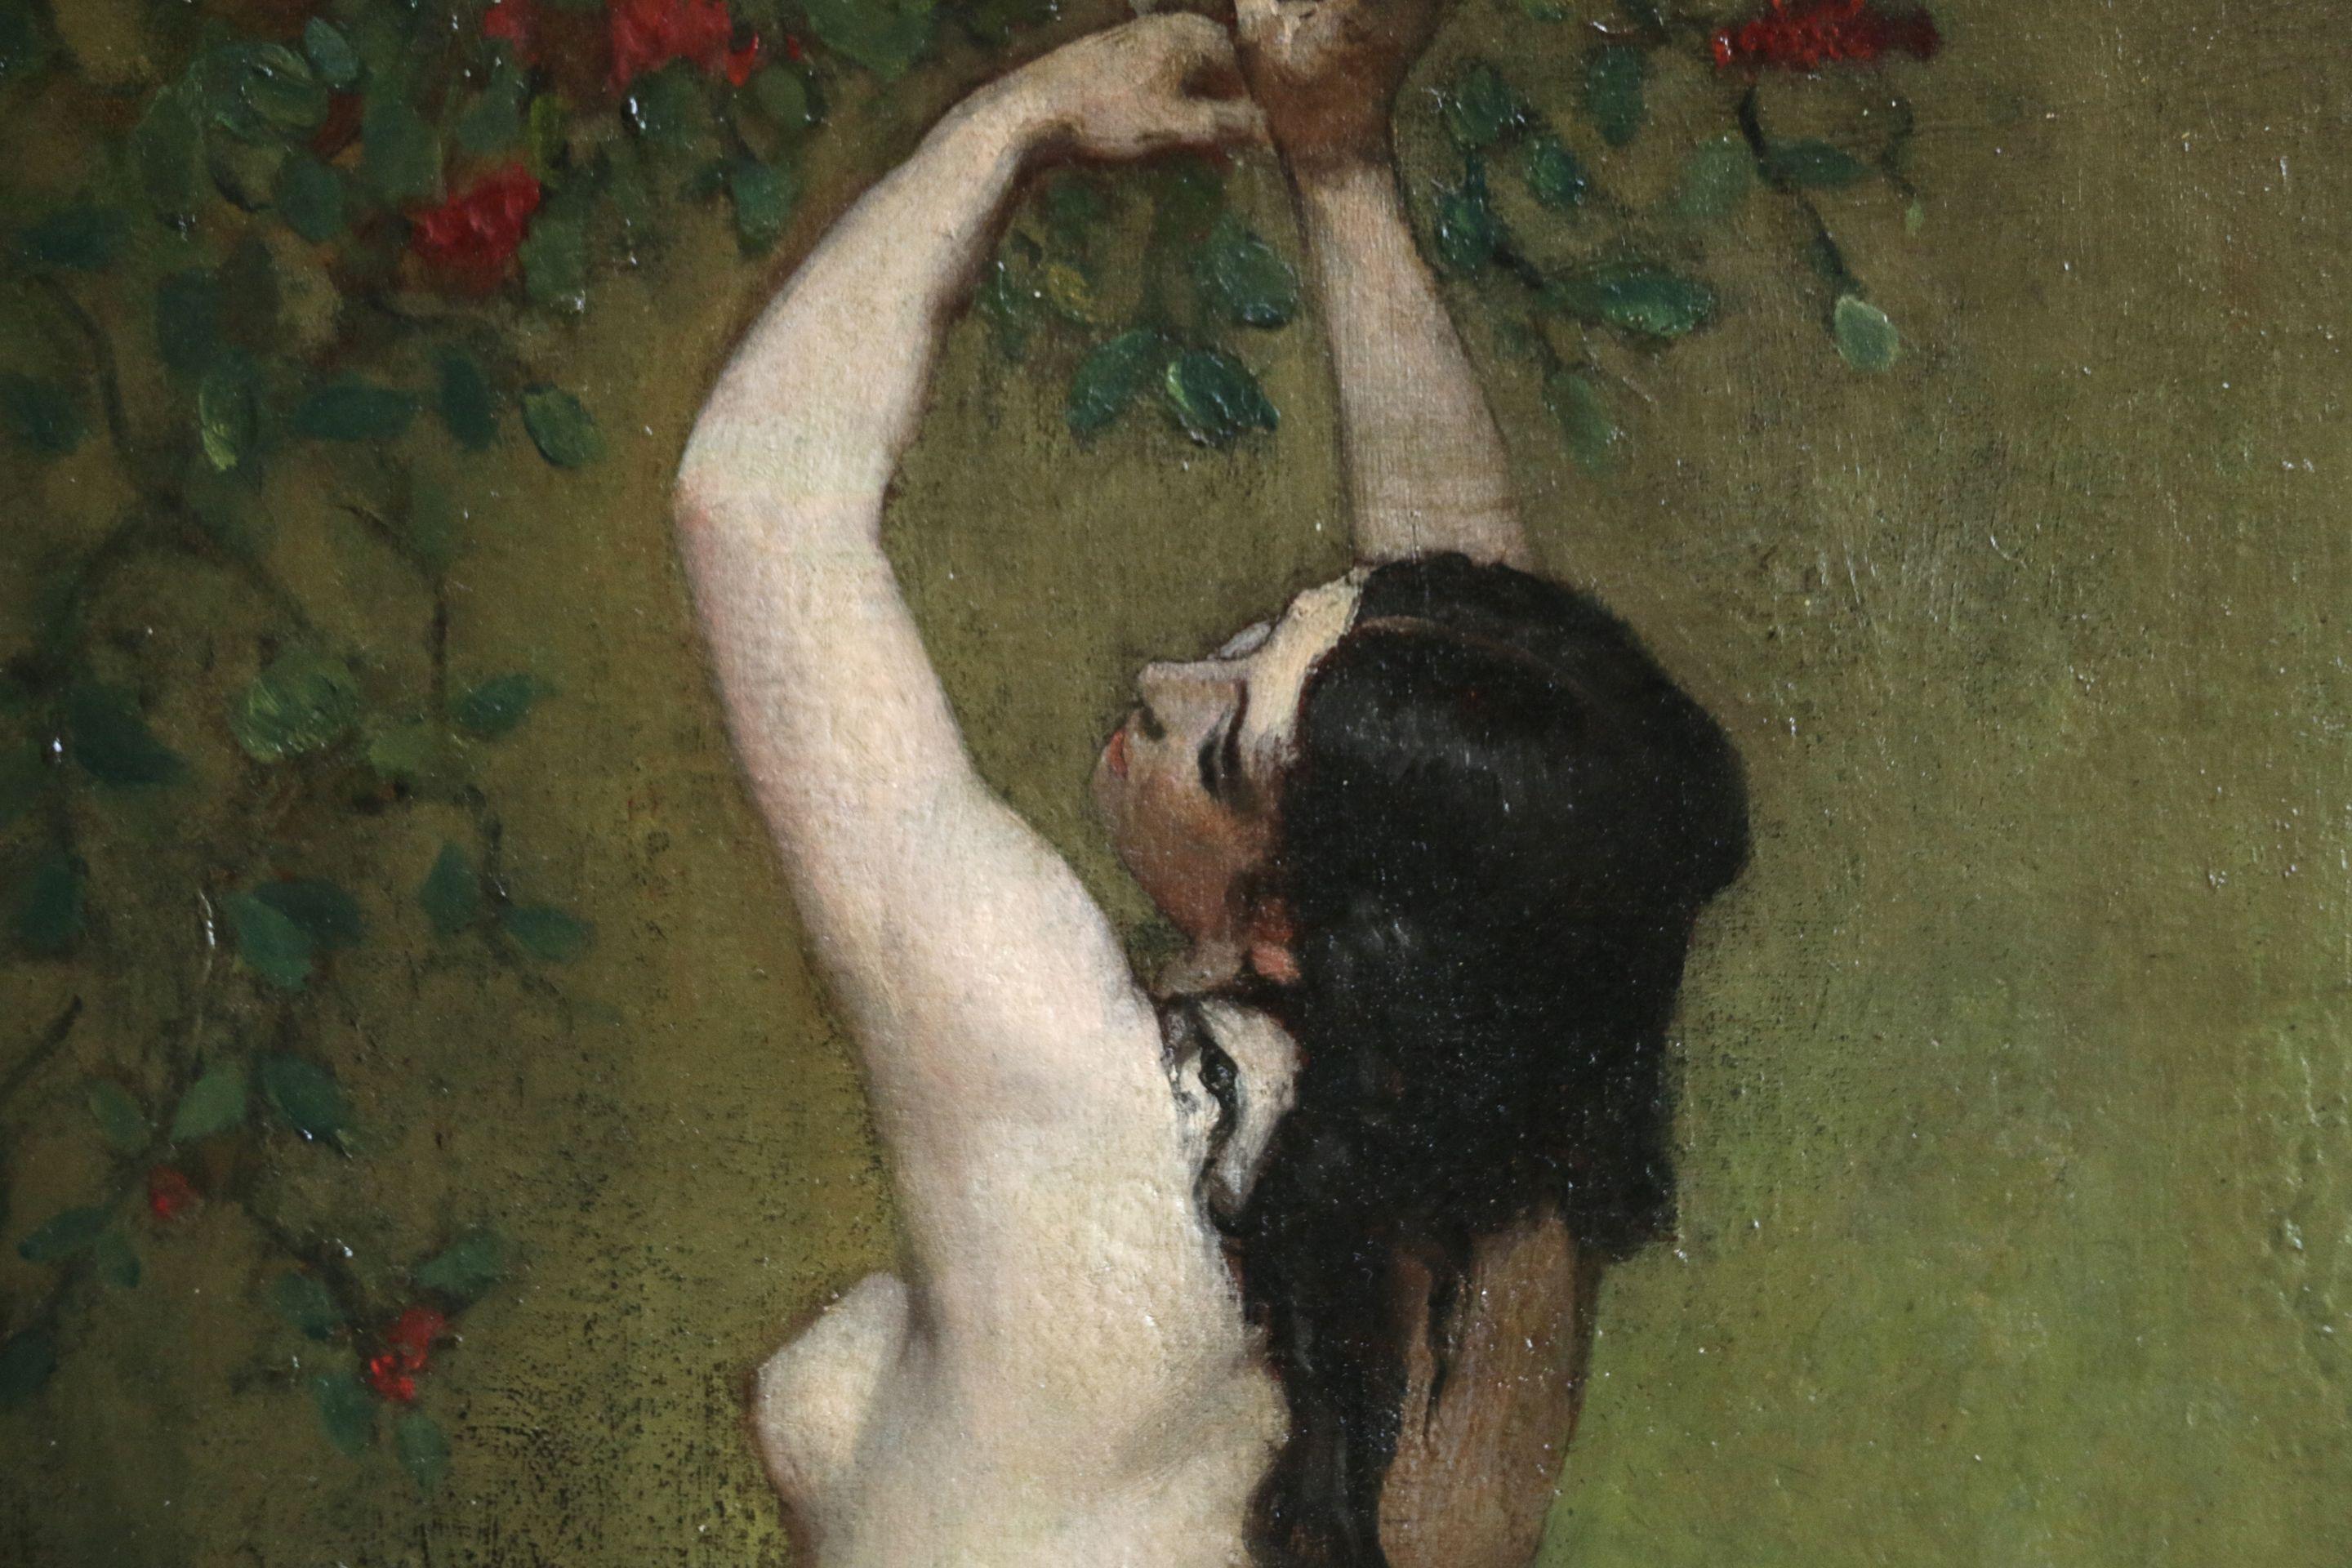 Nackt – Painting von Frederick Arthur Bridgman